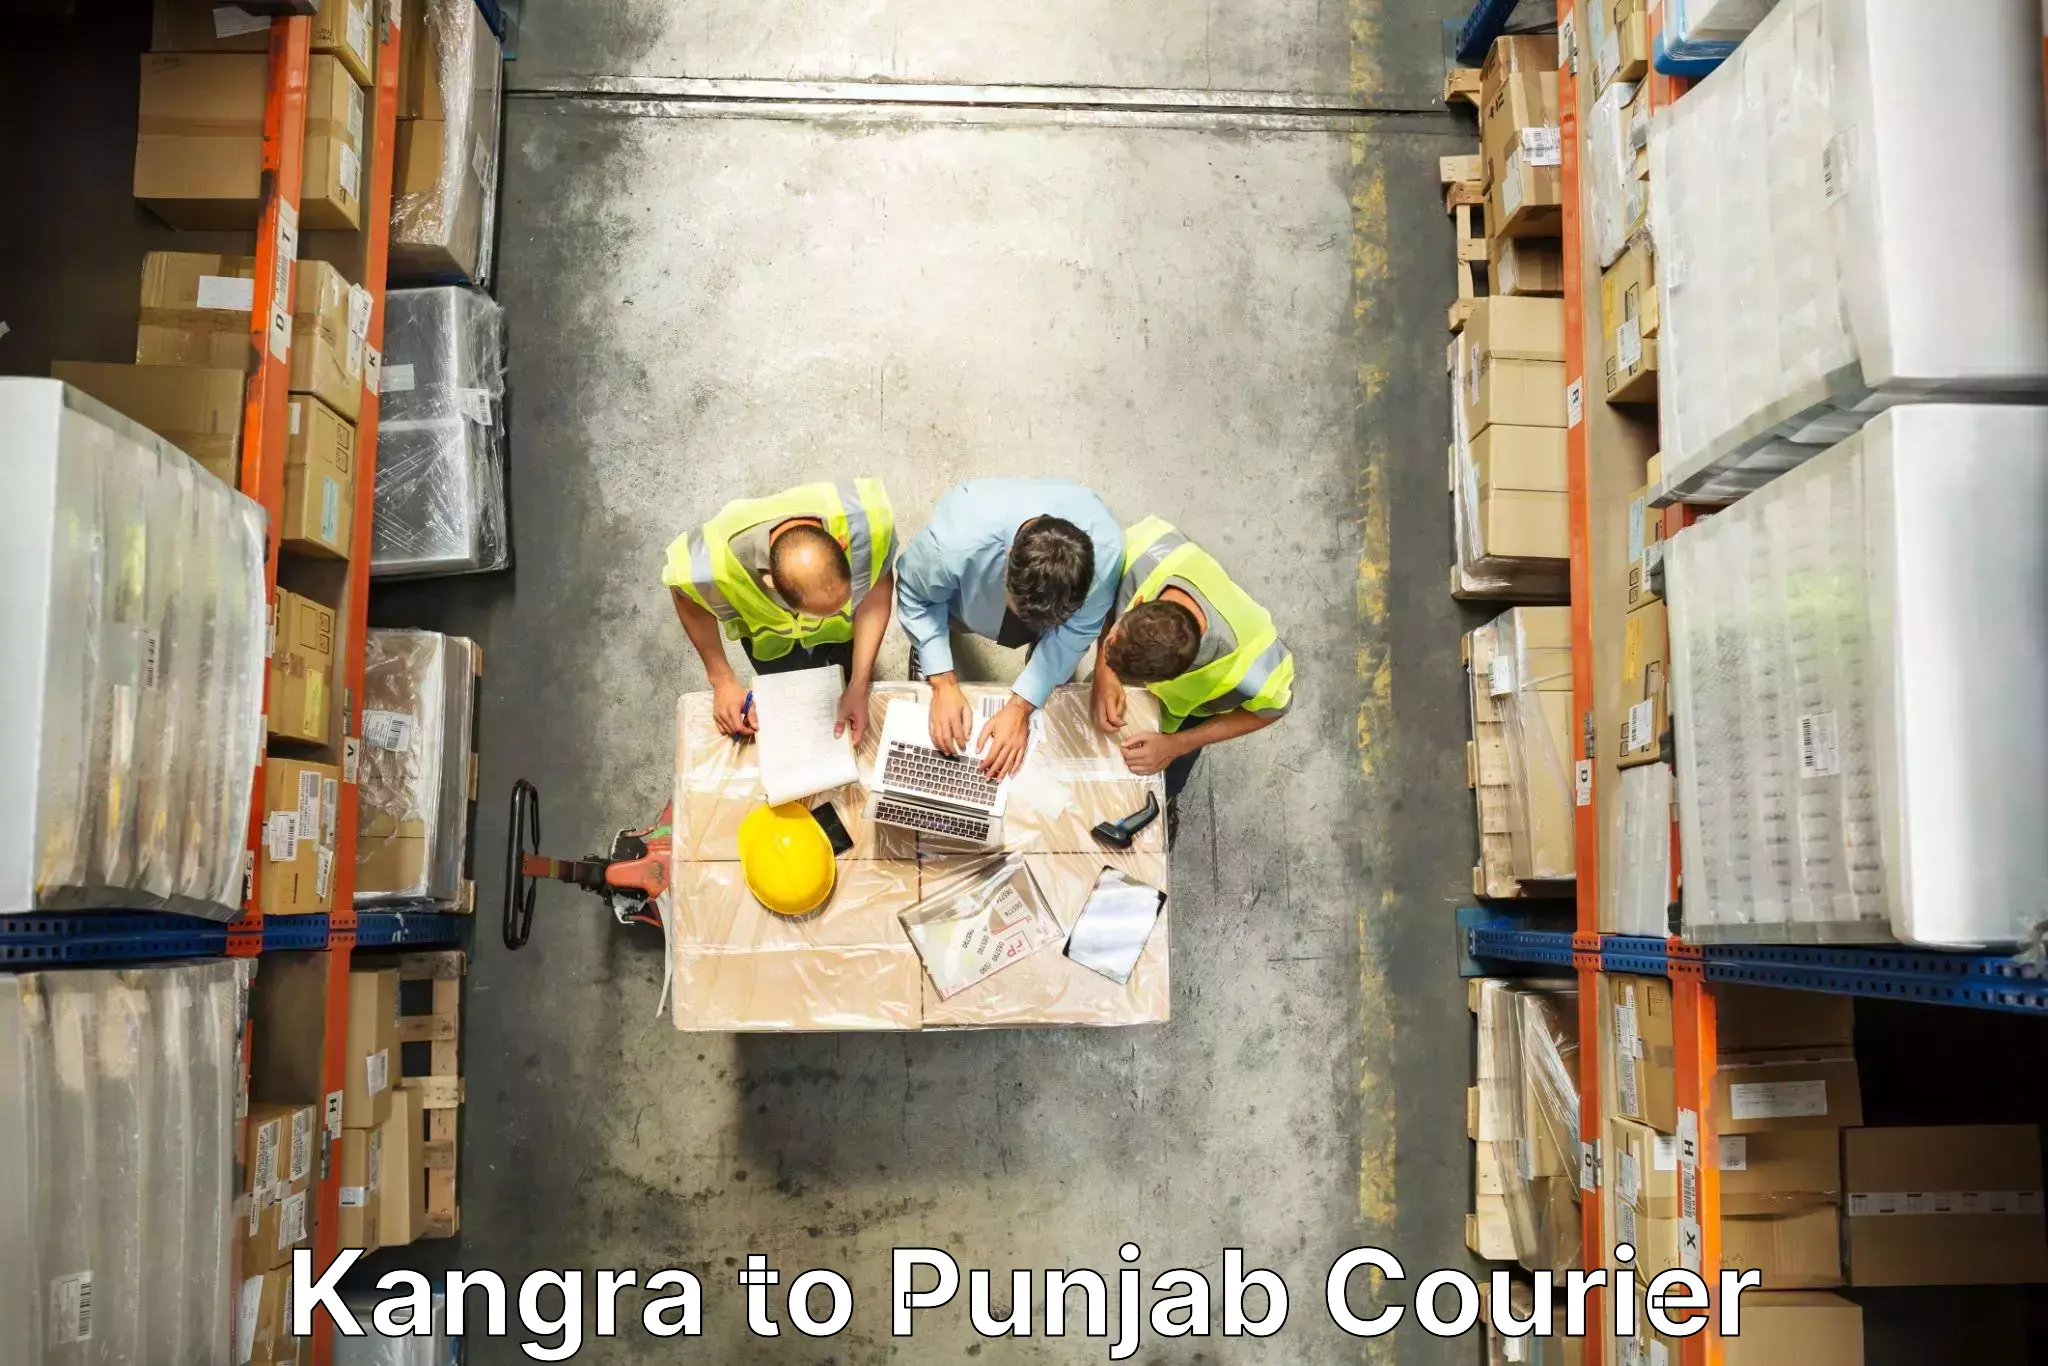 Professional movers Kangra to Punjab